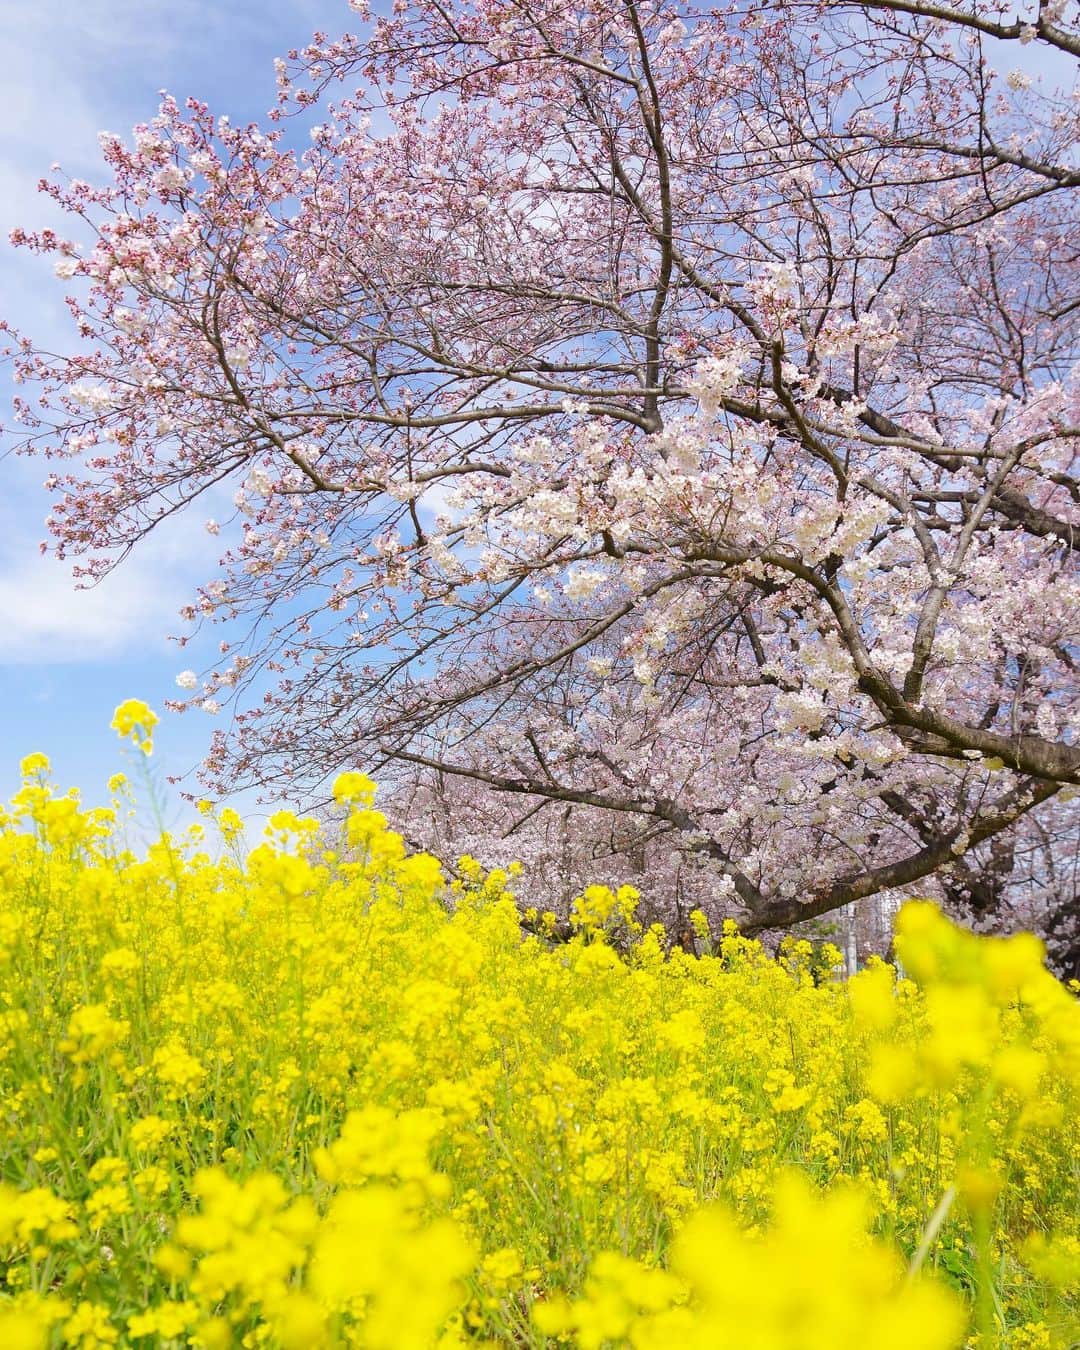 田島知華のインスタグラム：「【Japan🇯🇵Saitama】 先日のCreator's Spaceで密着していただいた日に撮影した一枚🌸 菜の花は満開だけど桜はまだ咲き始め。 風が強い日だったので、ダイナミックに揺れる菜の花を表現したくシャッターを切りました。 Copyright ©︎ TAJIHARU _ #たじはるトリップ #TAJIHARU_japan #クリエイターズスペース #トラベルフォトライター #日本 #埼玉 #熊谷桜堤 #桜 #菜の花 #お花見 #ソメイヨシノ #日本さくら名所100選 #女子旅 #カメラ女子 #japantrip #saitama #cherryblossoms #japanesecherryblossom #rapeblossoms #canola #igersjp #ptk_japan #photo_jpn #wonderful_places #loves_nippon #lovers_nippon #japan_daytime_view #bestjapanpics #awesome_phototrip」